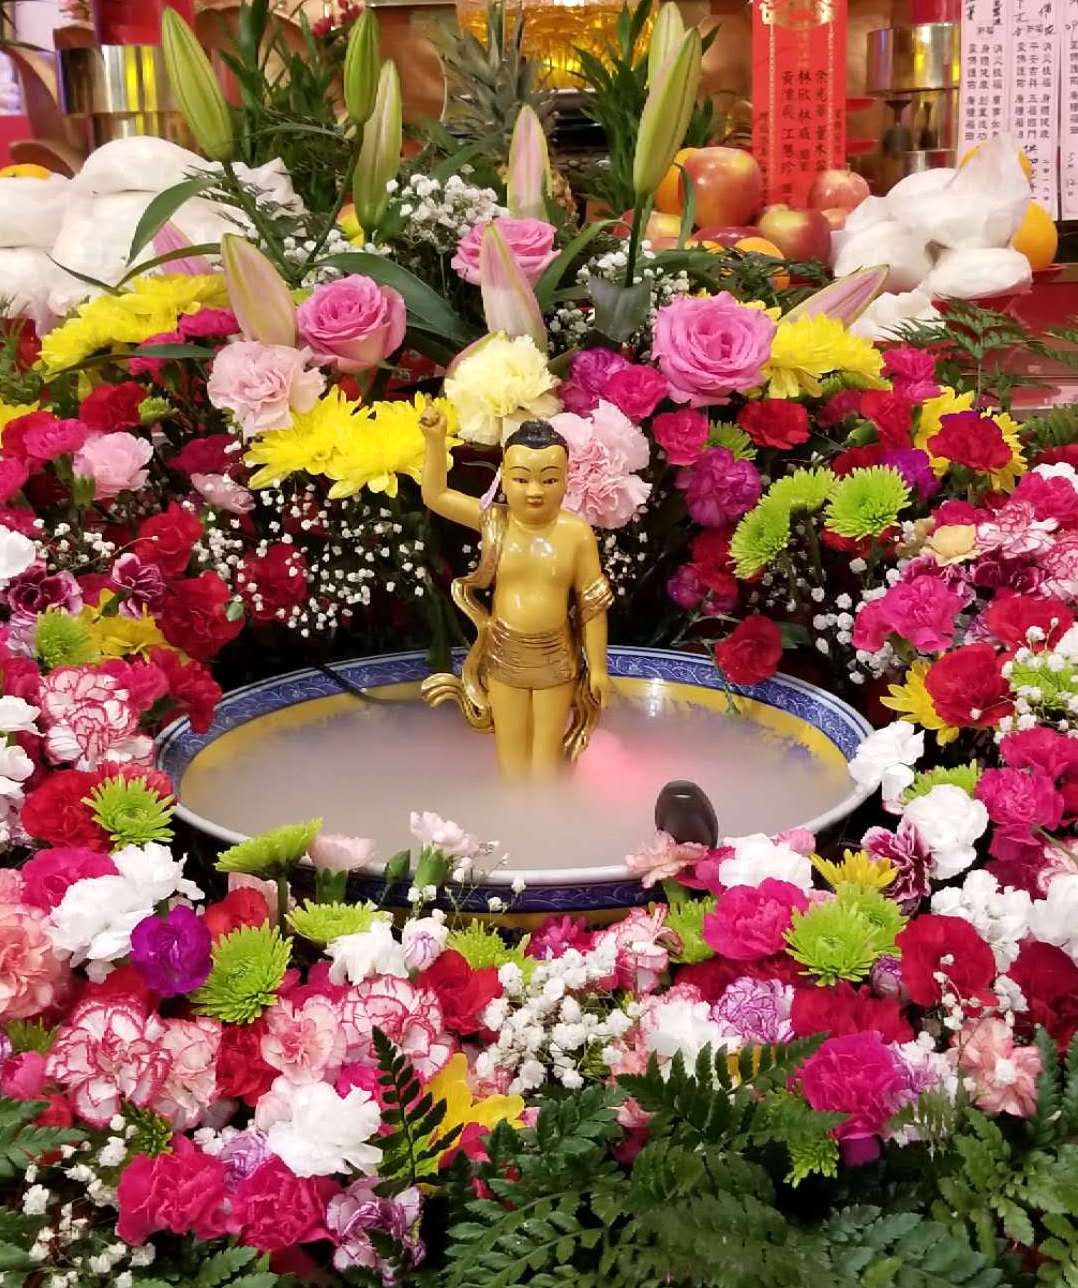 Buddha's Birthday Mahayana Temple